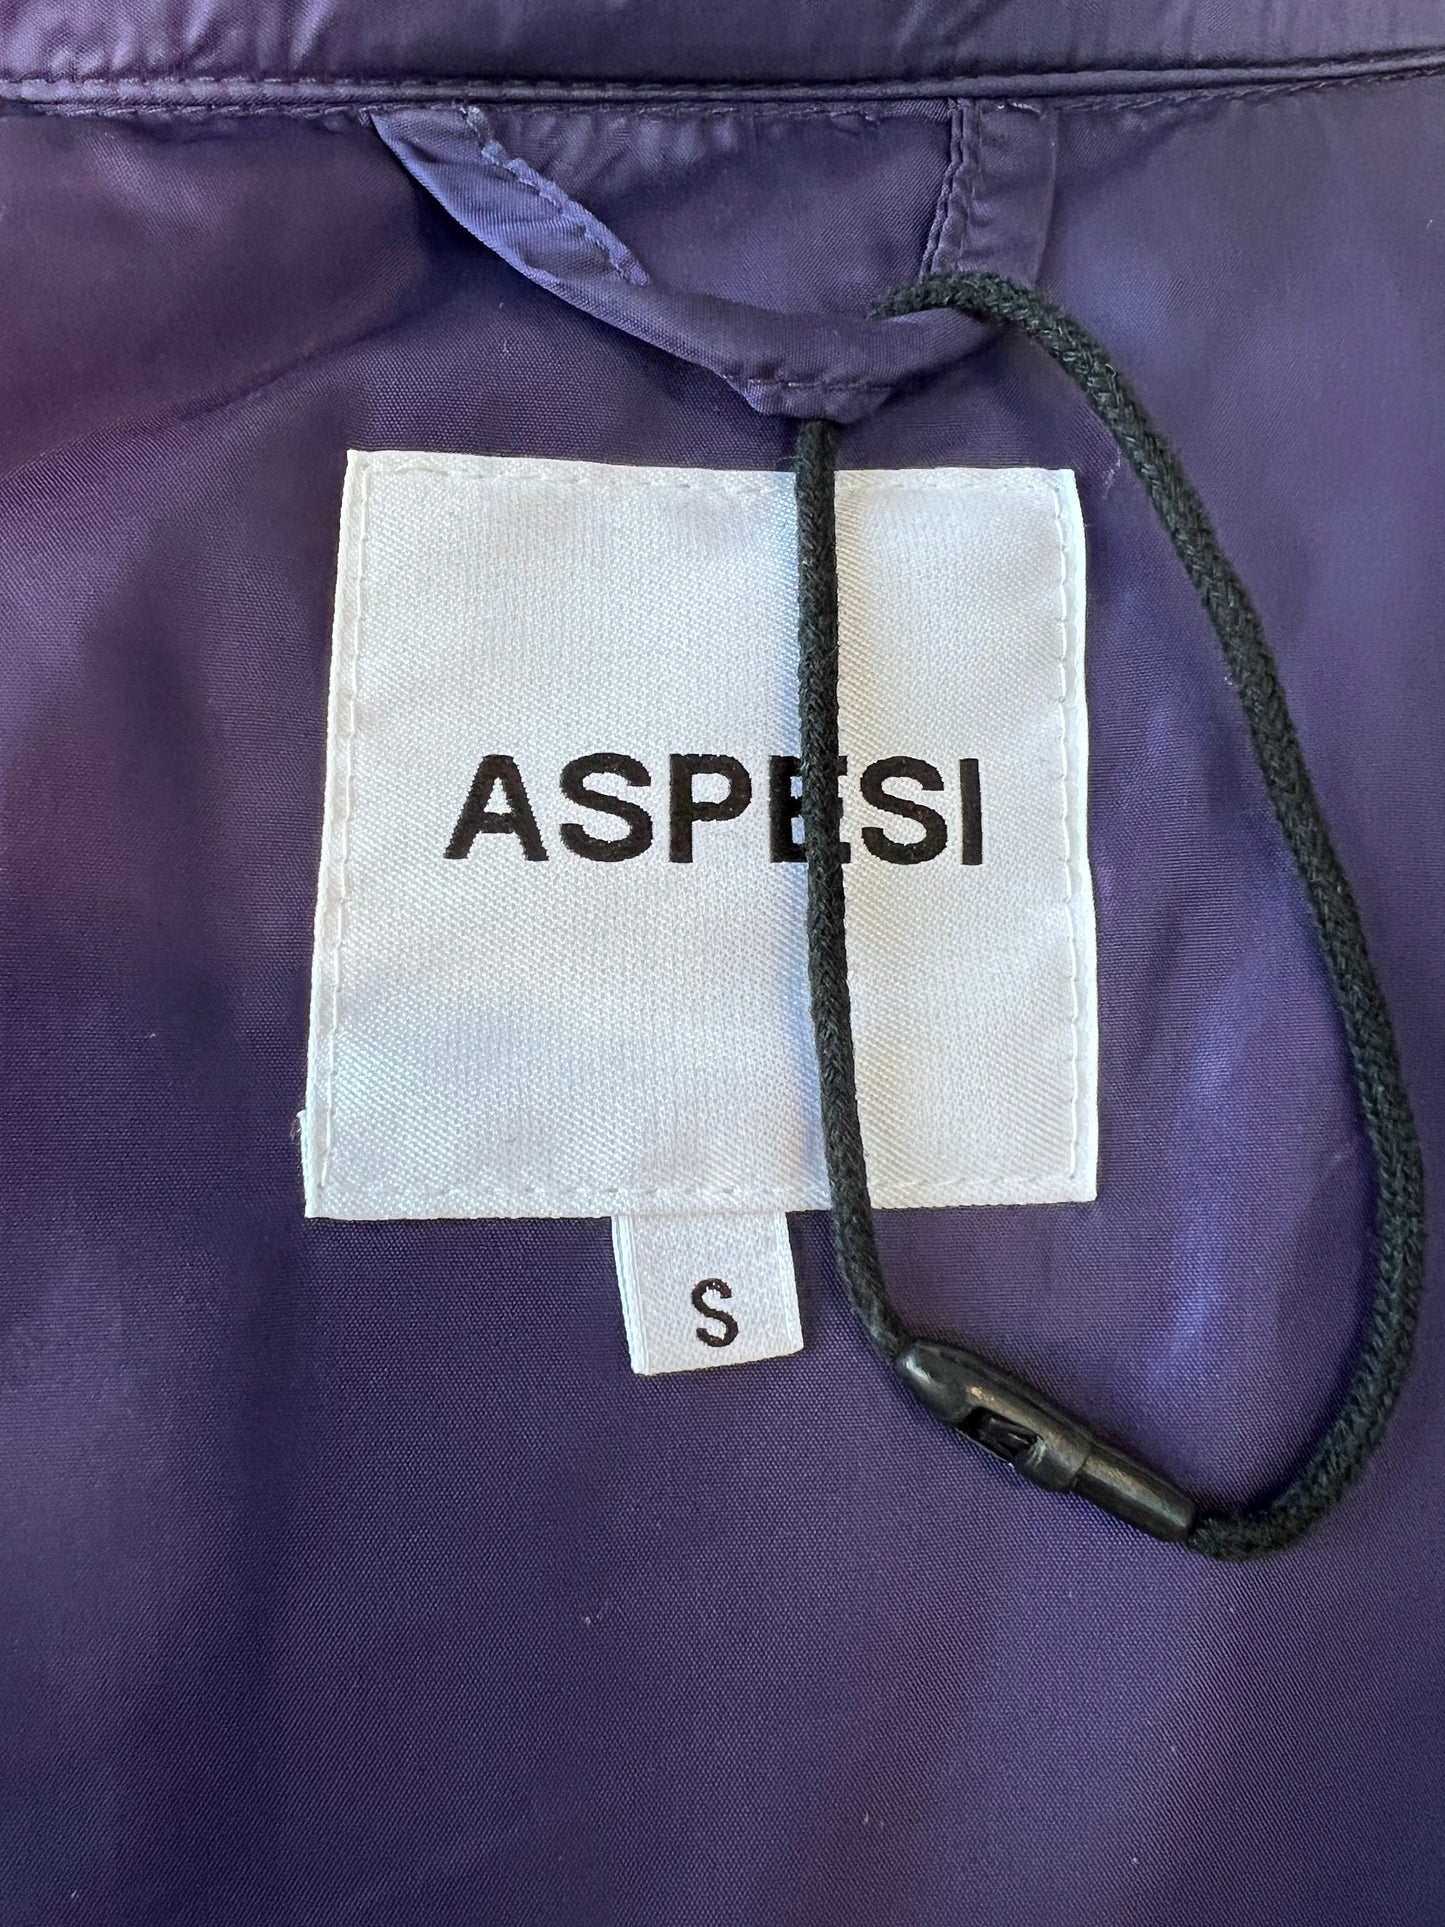 Veste surchemise matelassée violet lavable (XS)